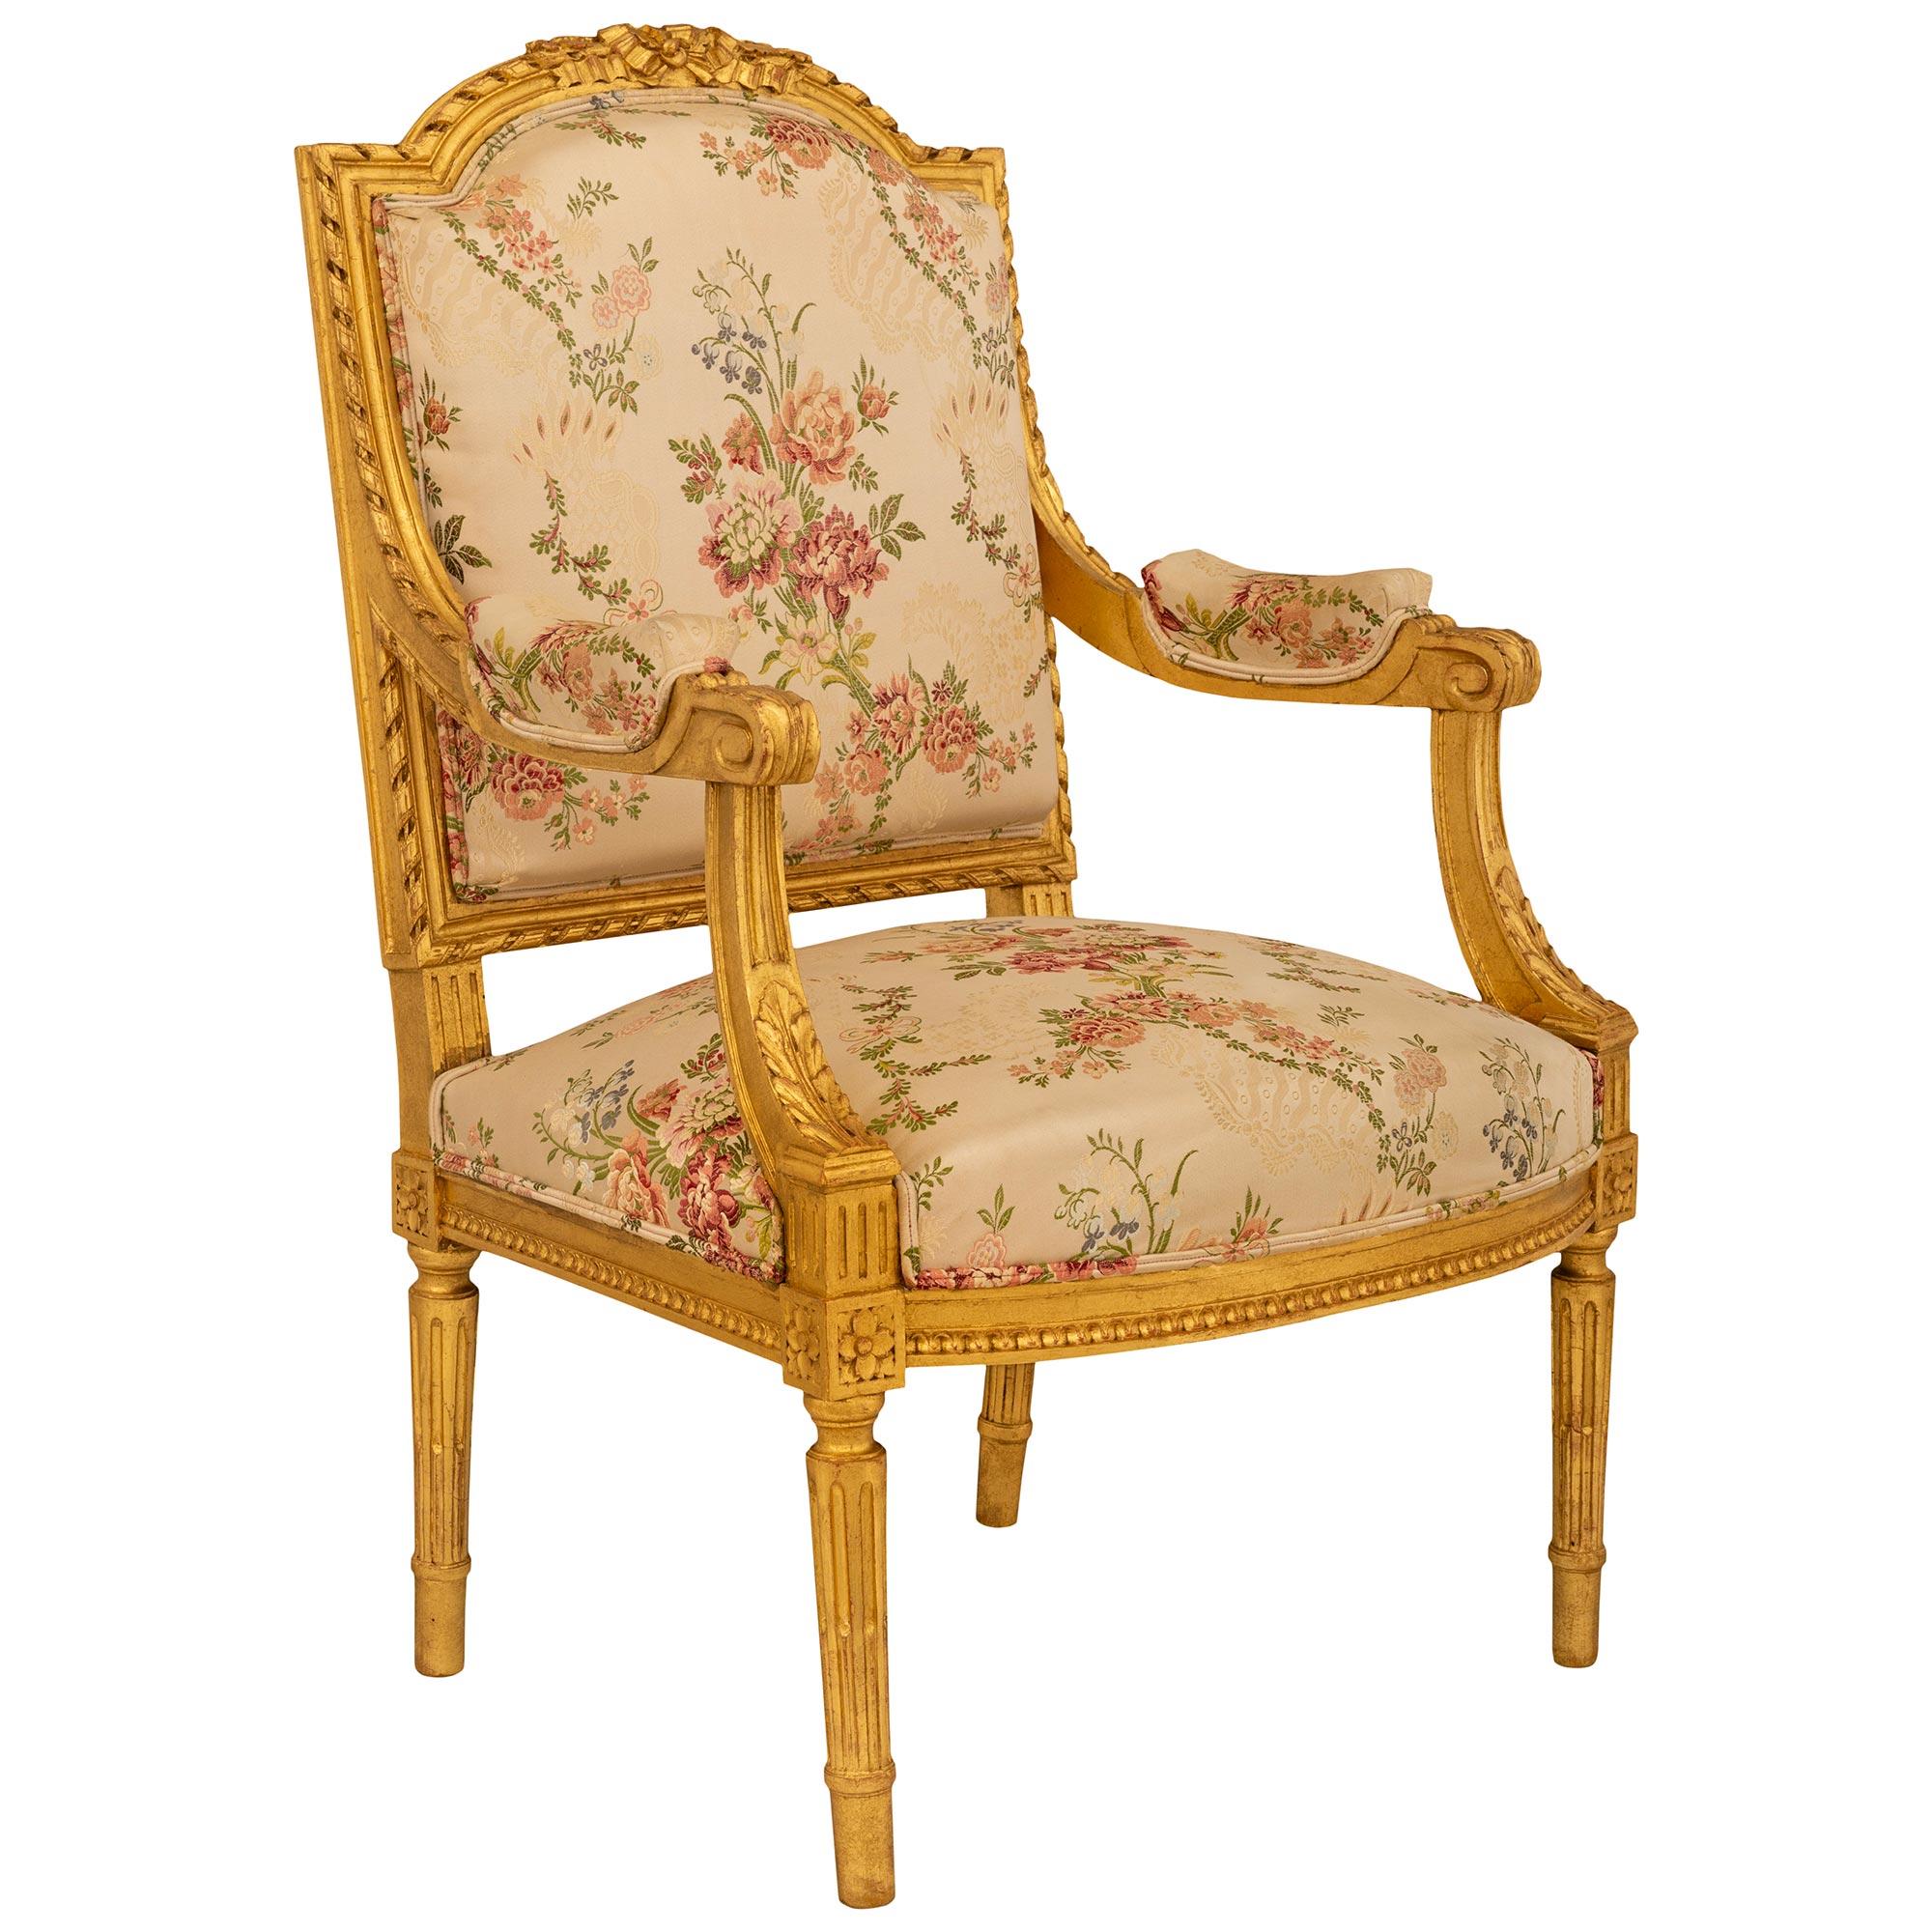 Une élégante paire de fauteuils en bois doré de style Louis XVI du XIXe siècle. Chaque chaise est supportée par quatre pieds ronds, effilés et cannelés en bois doré, avec des blocs de rosettes richement sculptés au sommet de chaque pied. Les frises